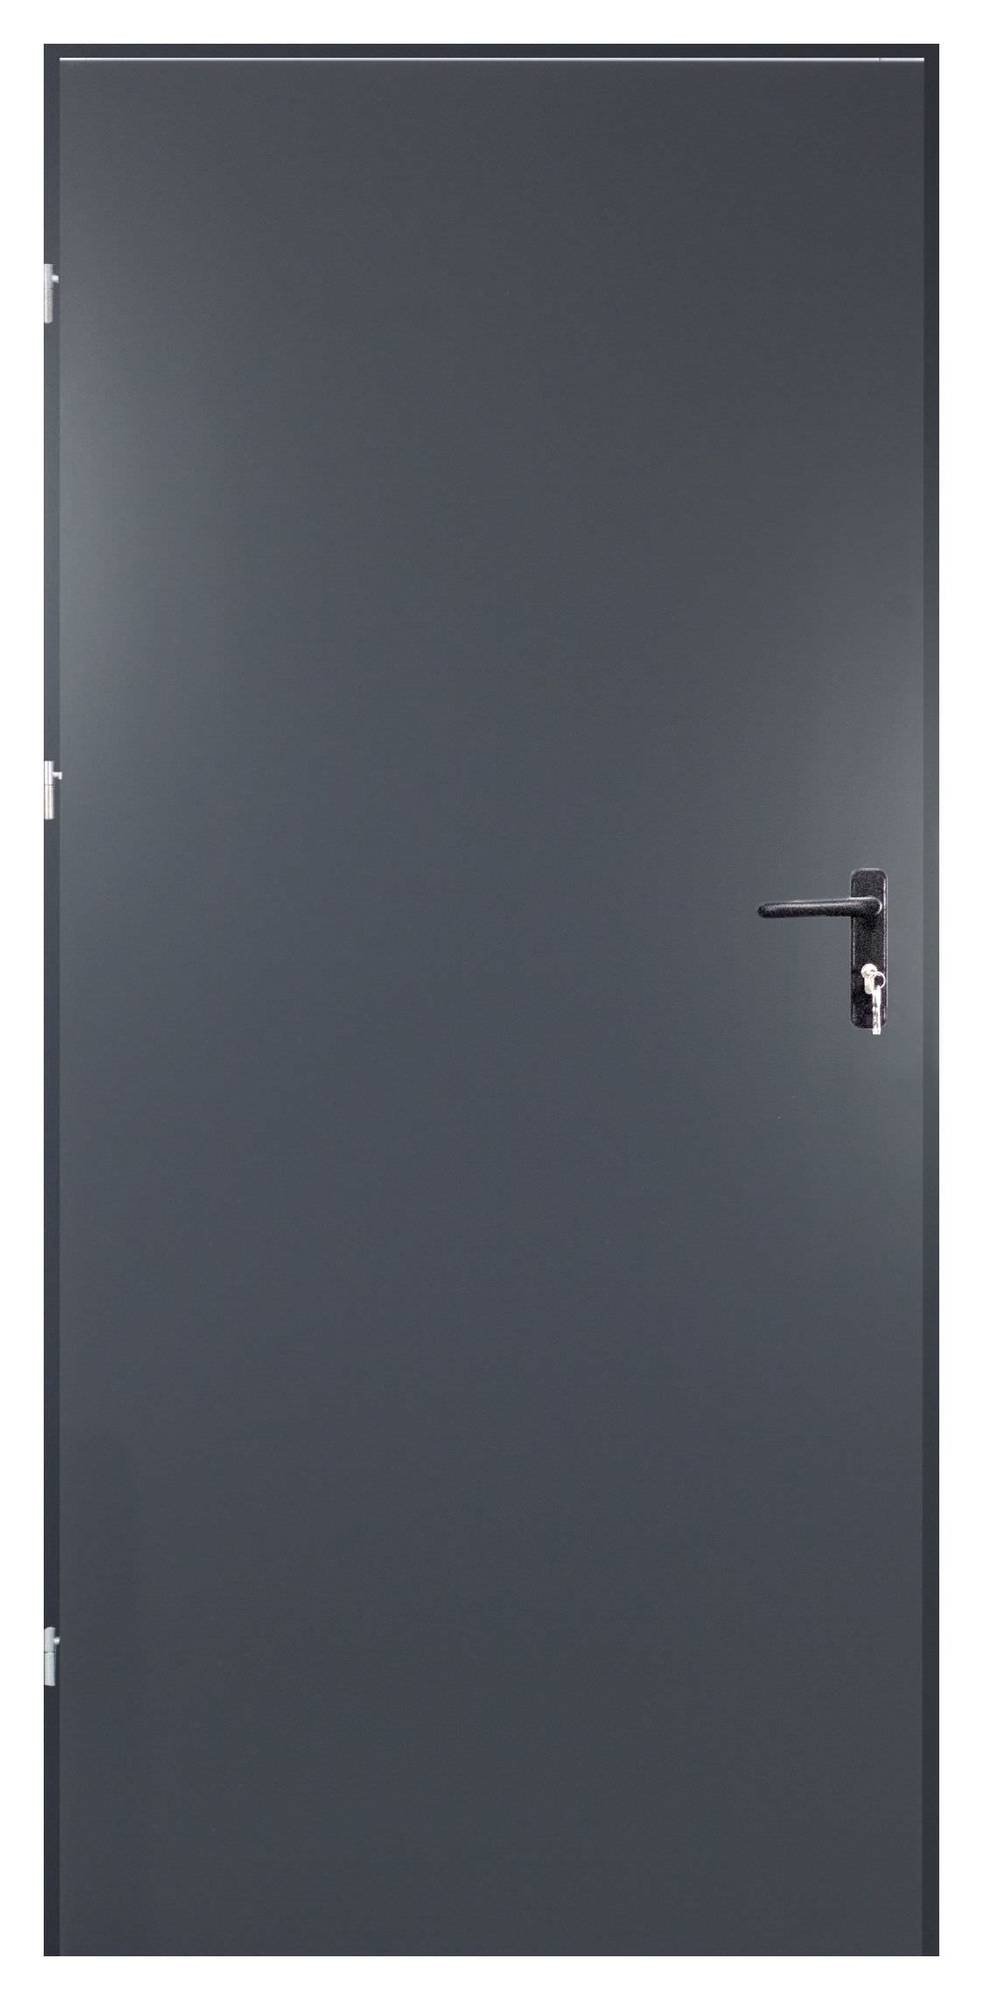 Plieninės durys RADEX TECHNIK, antracito sp., 880 x 2052 mm, dešinė